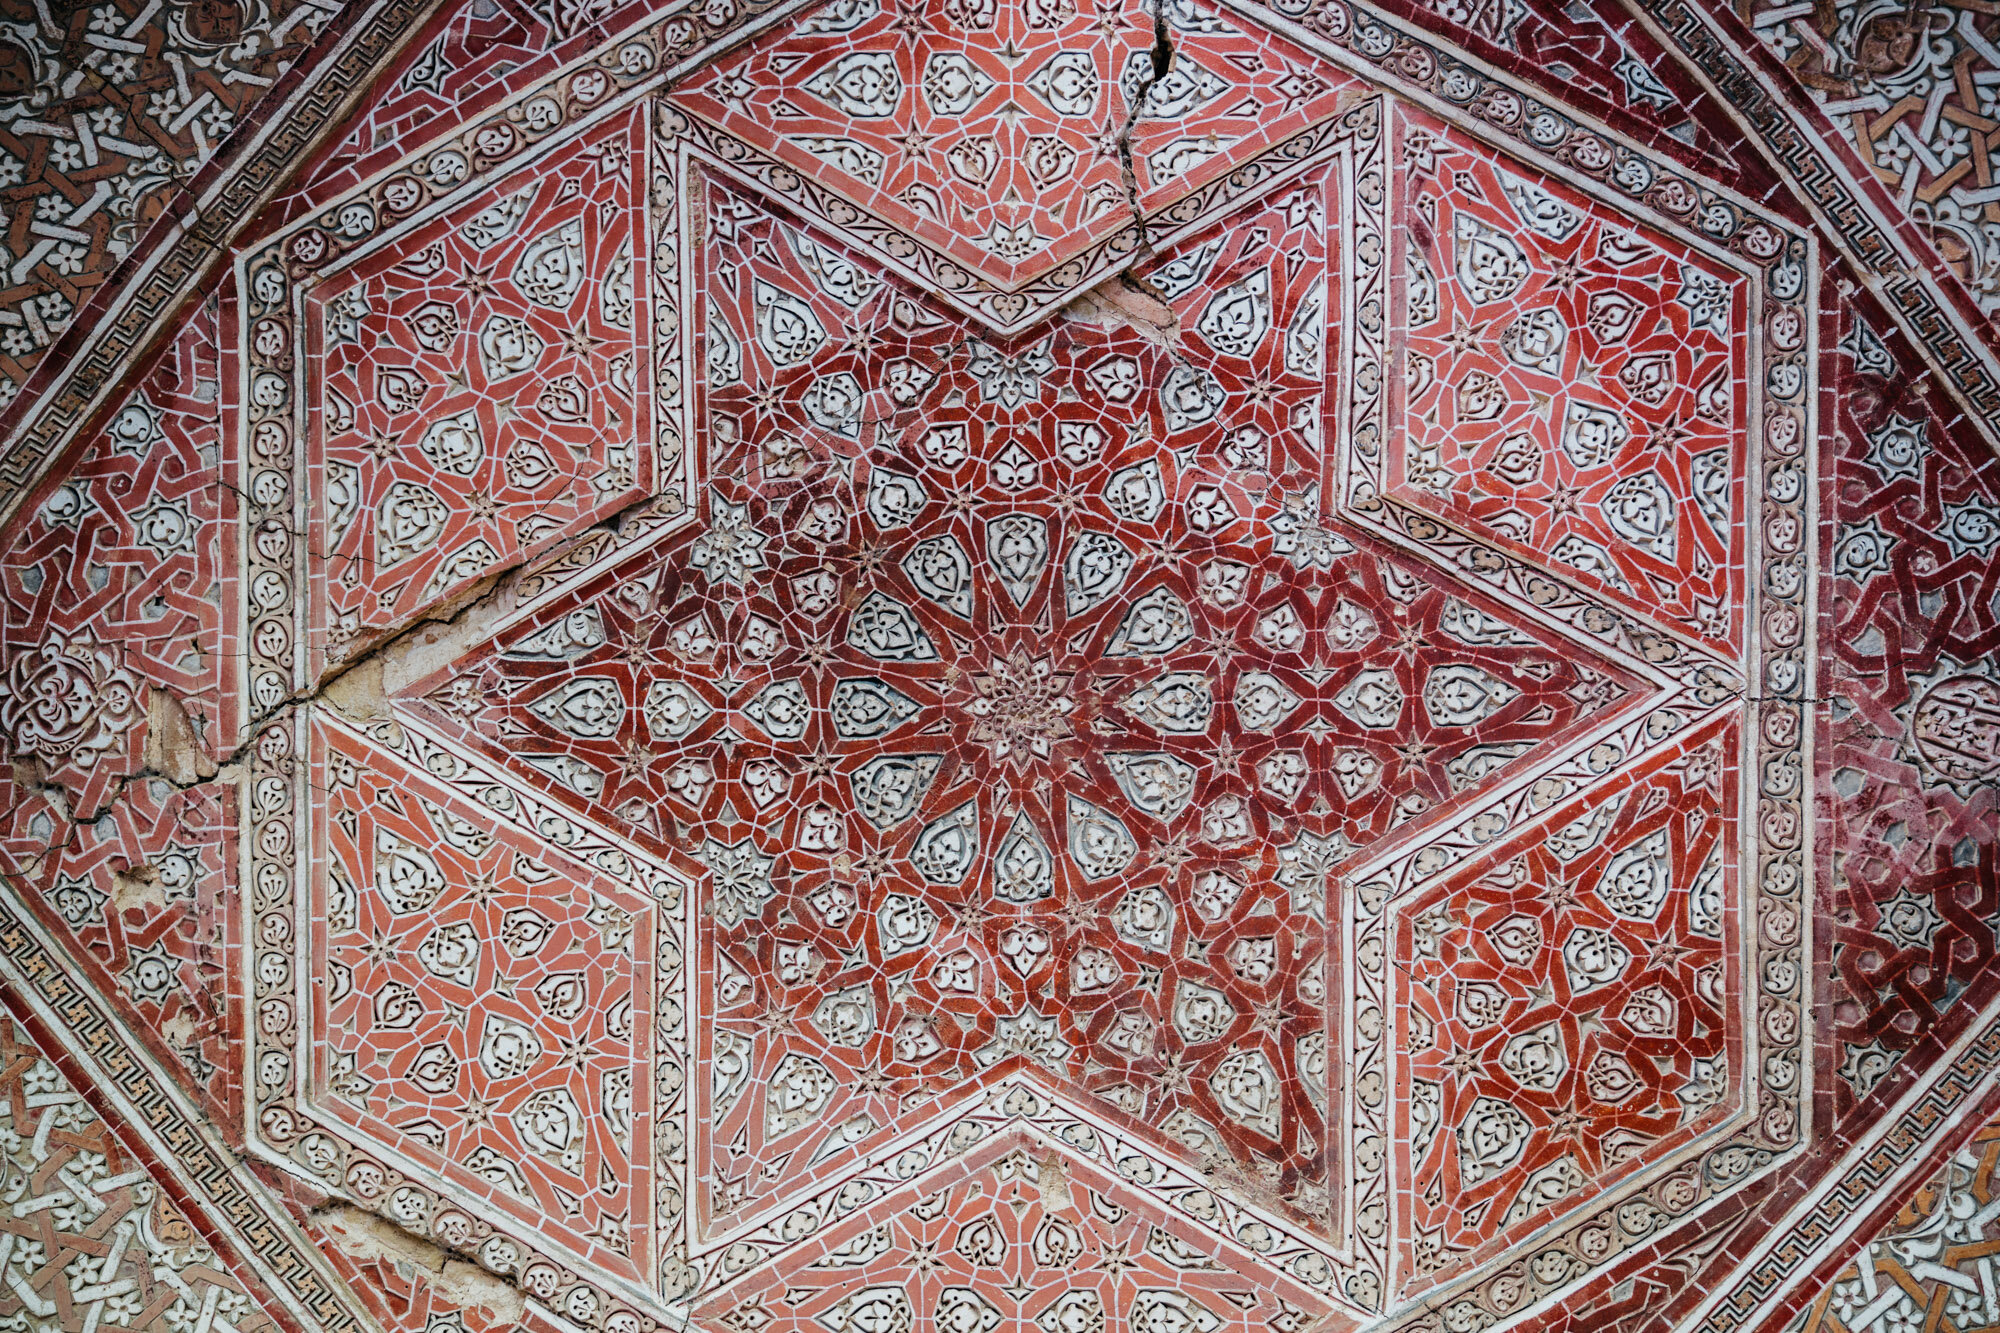  Ceiling details 